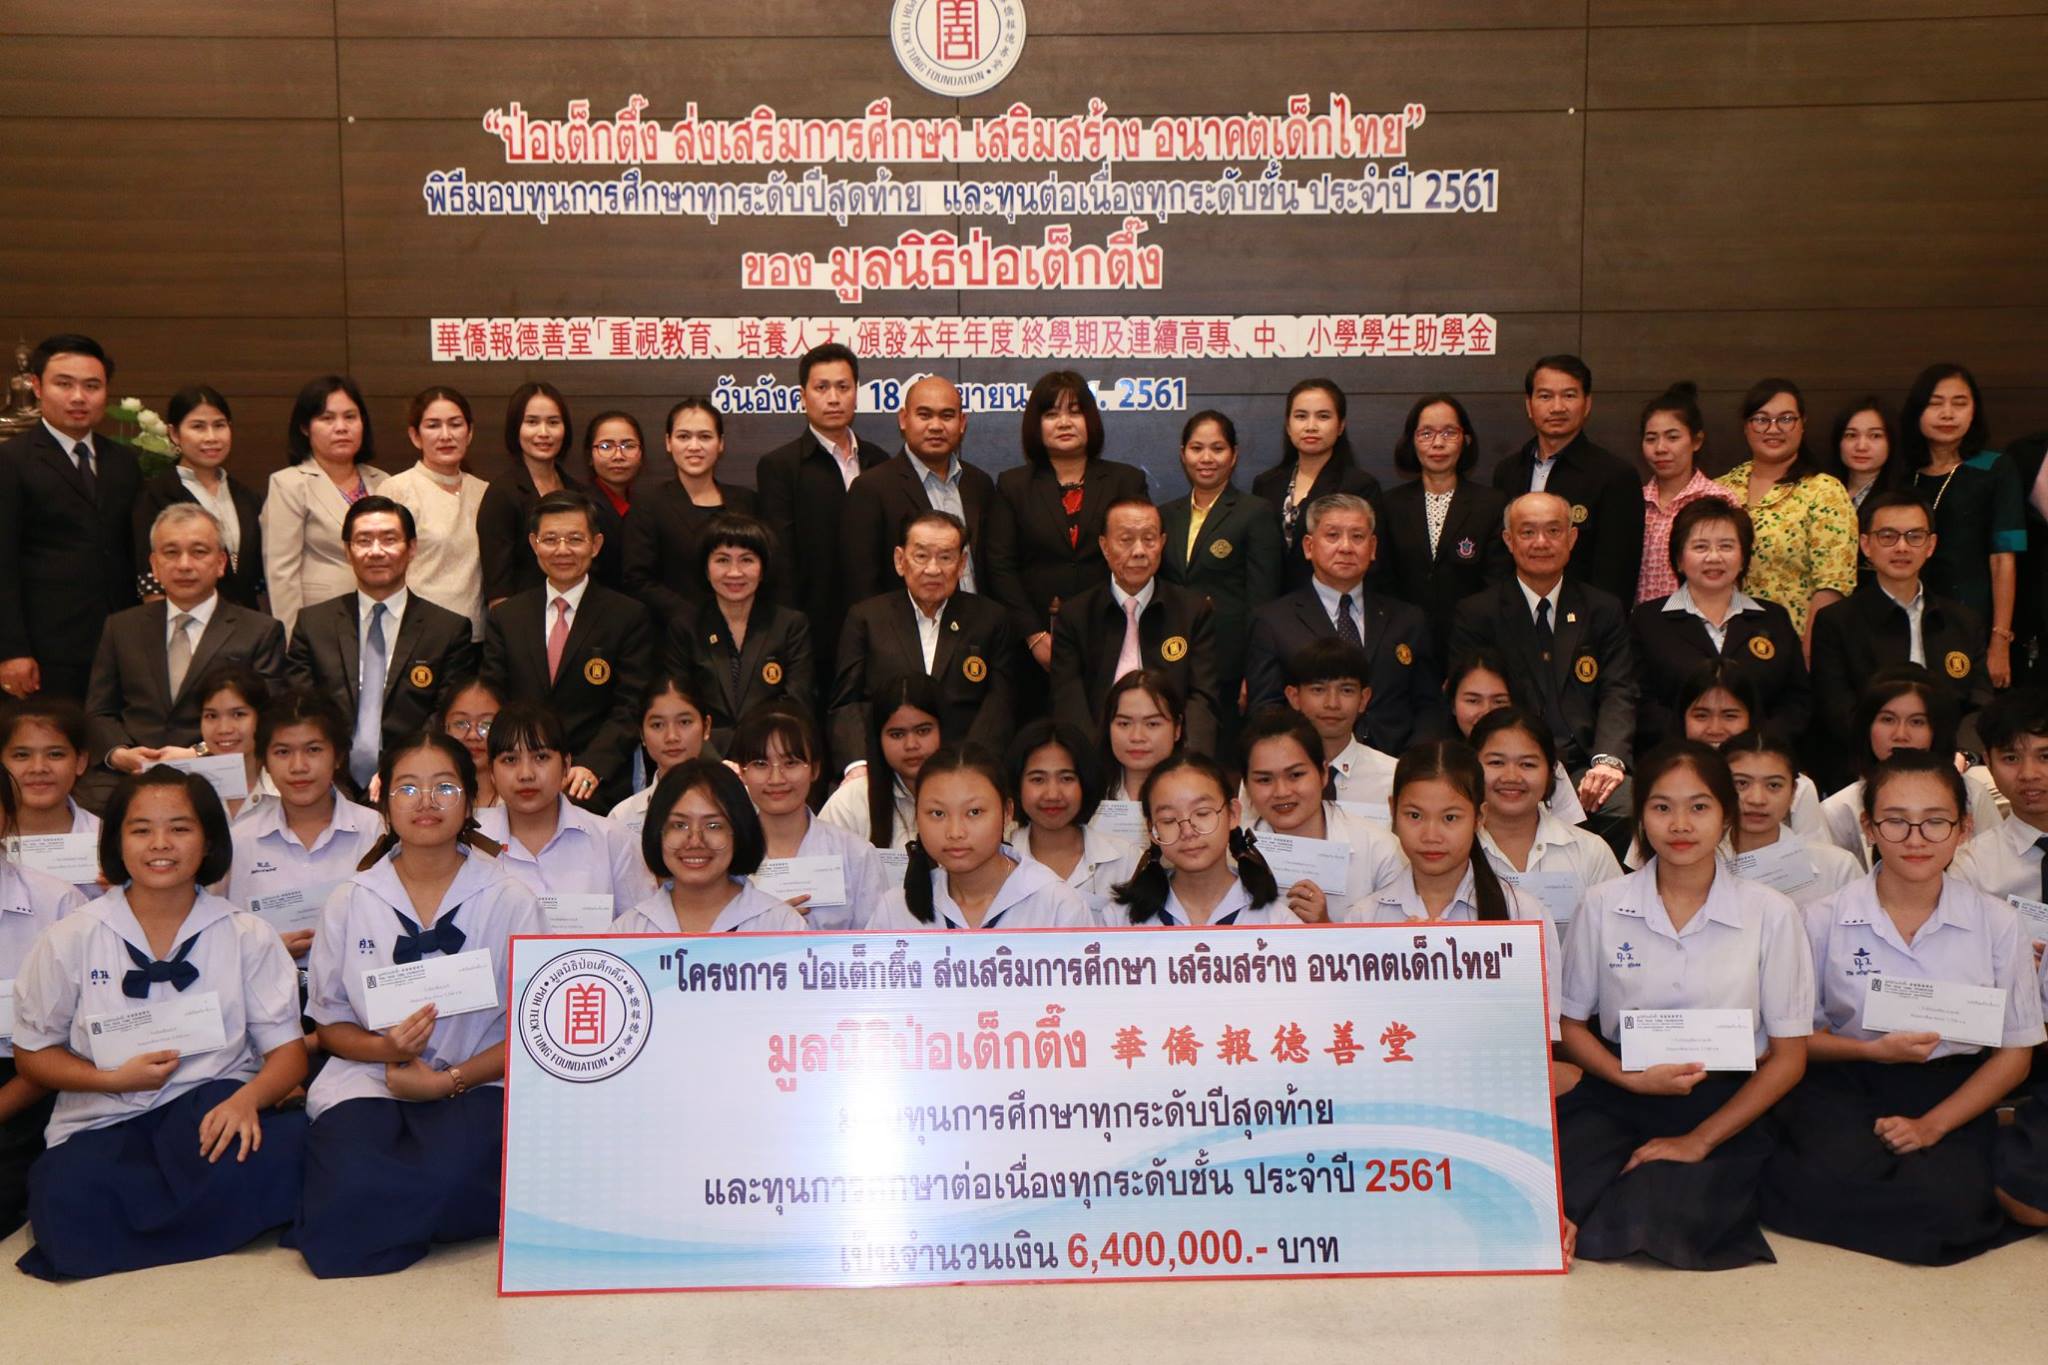  “ป่อเต็กตึ๊ง ส่งเสริมการศึกษา เสริมสร้าง อนาคตเด็กไทย”มอบทุนการศึกษาทุกระดับปีสุดท้ายและทุนต่อเนื่องในทุกระดับชั้น ประจำปี 2561